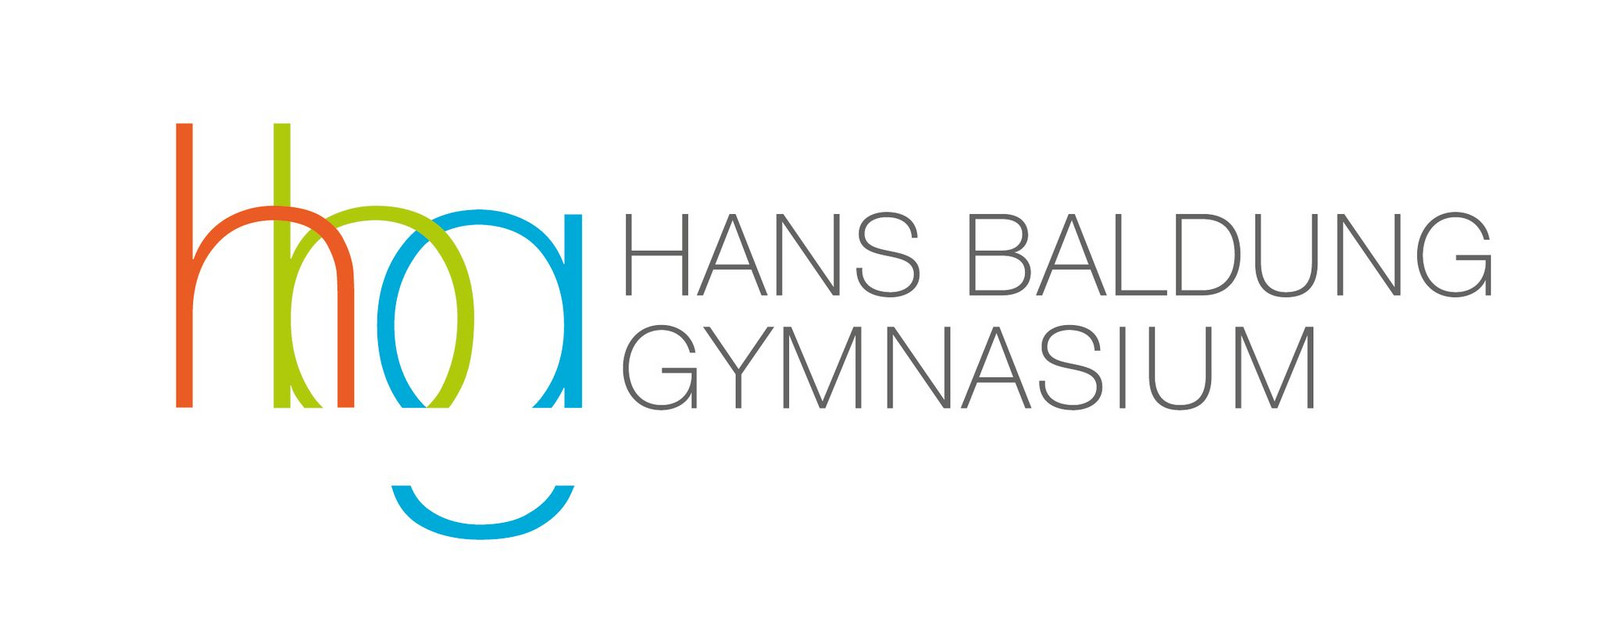 Hans-Baldung-Gymnasium